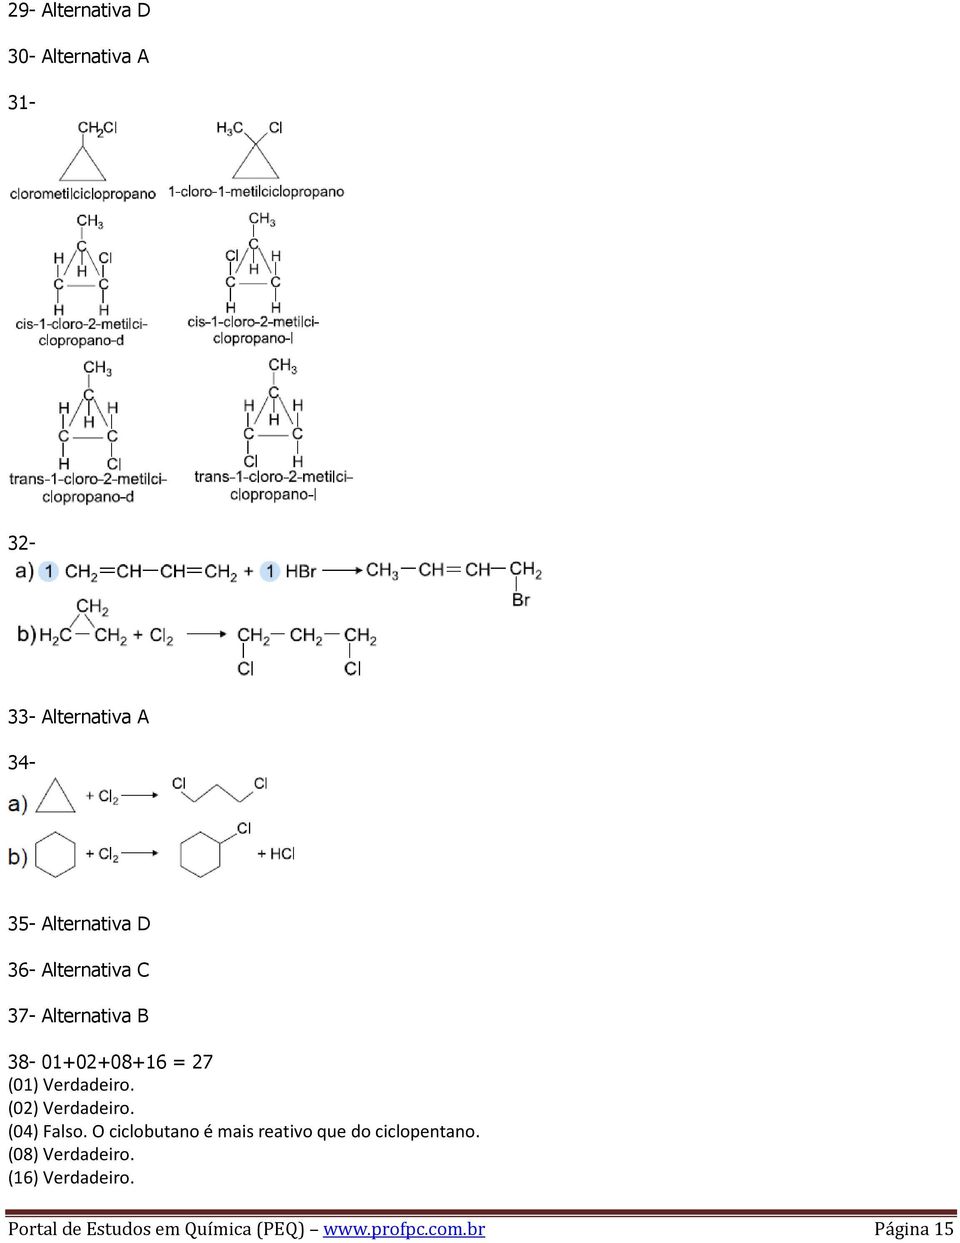 (02) Verdadeiro. (04) Falso. O ciclobutano é mais reativo que do ciclopentano.